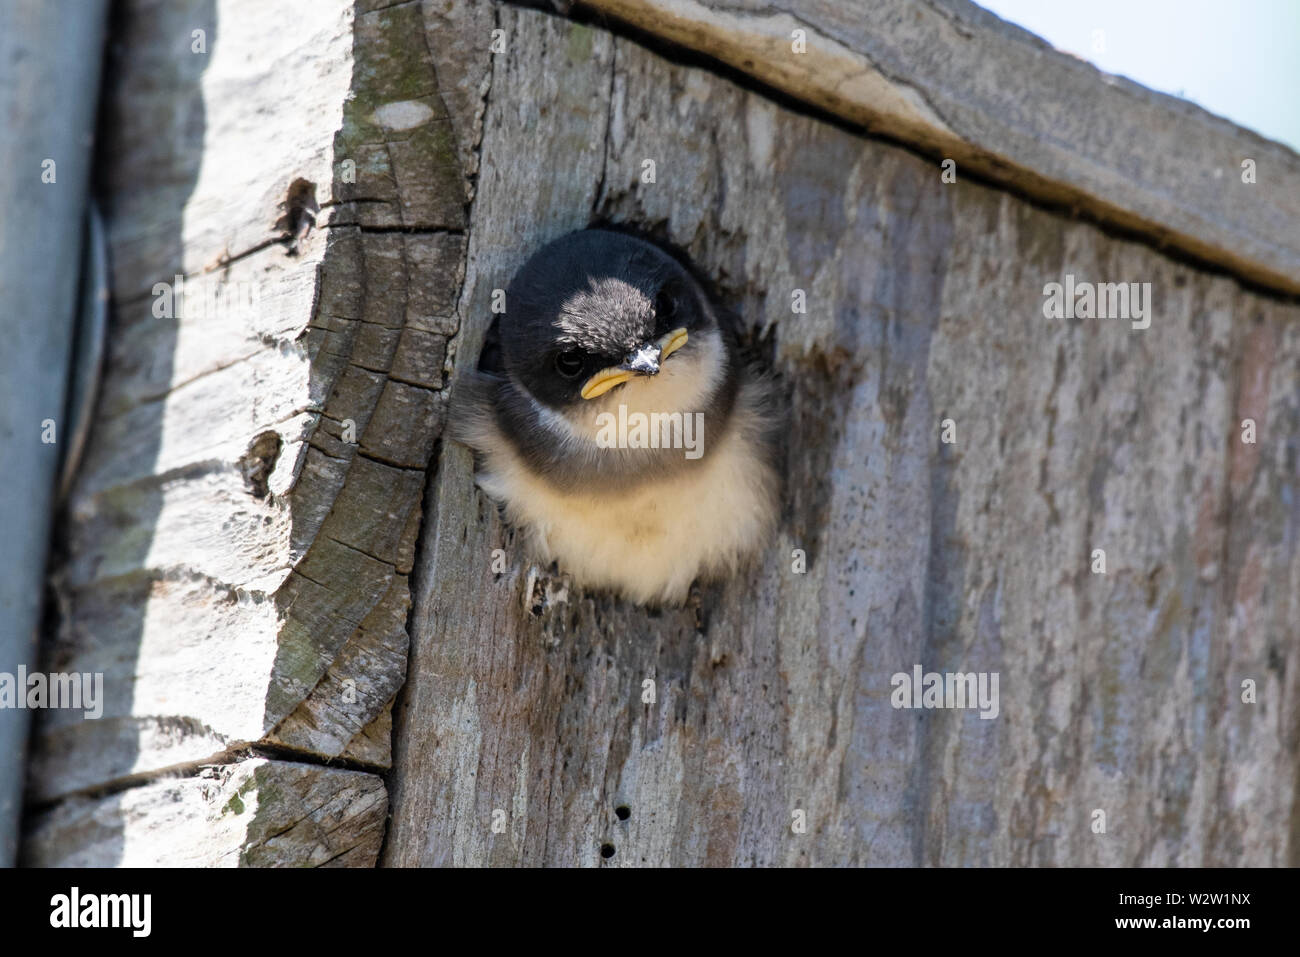 Sparrow tiliting árbol cabeza en una pose curiosa mientras que sobresale por el orificio de la casita para aves. Foto de stock